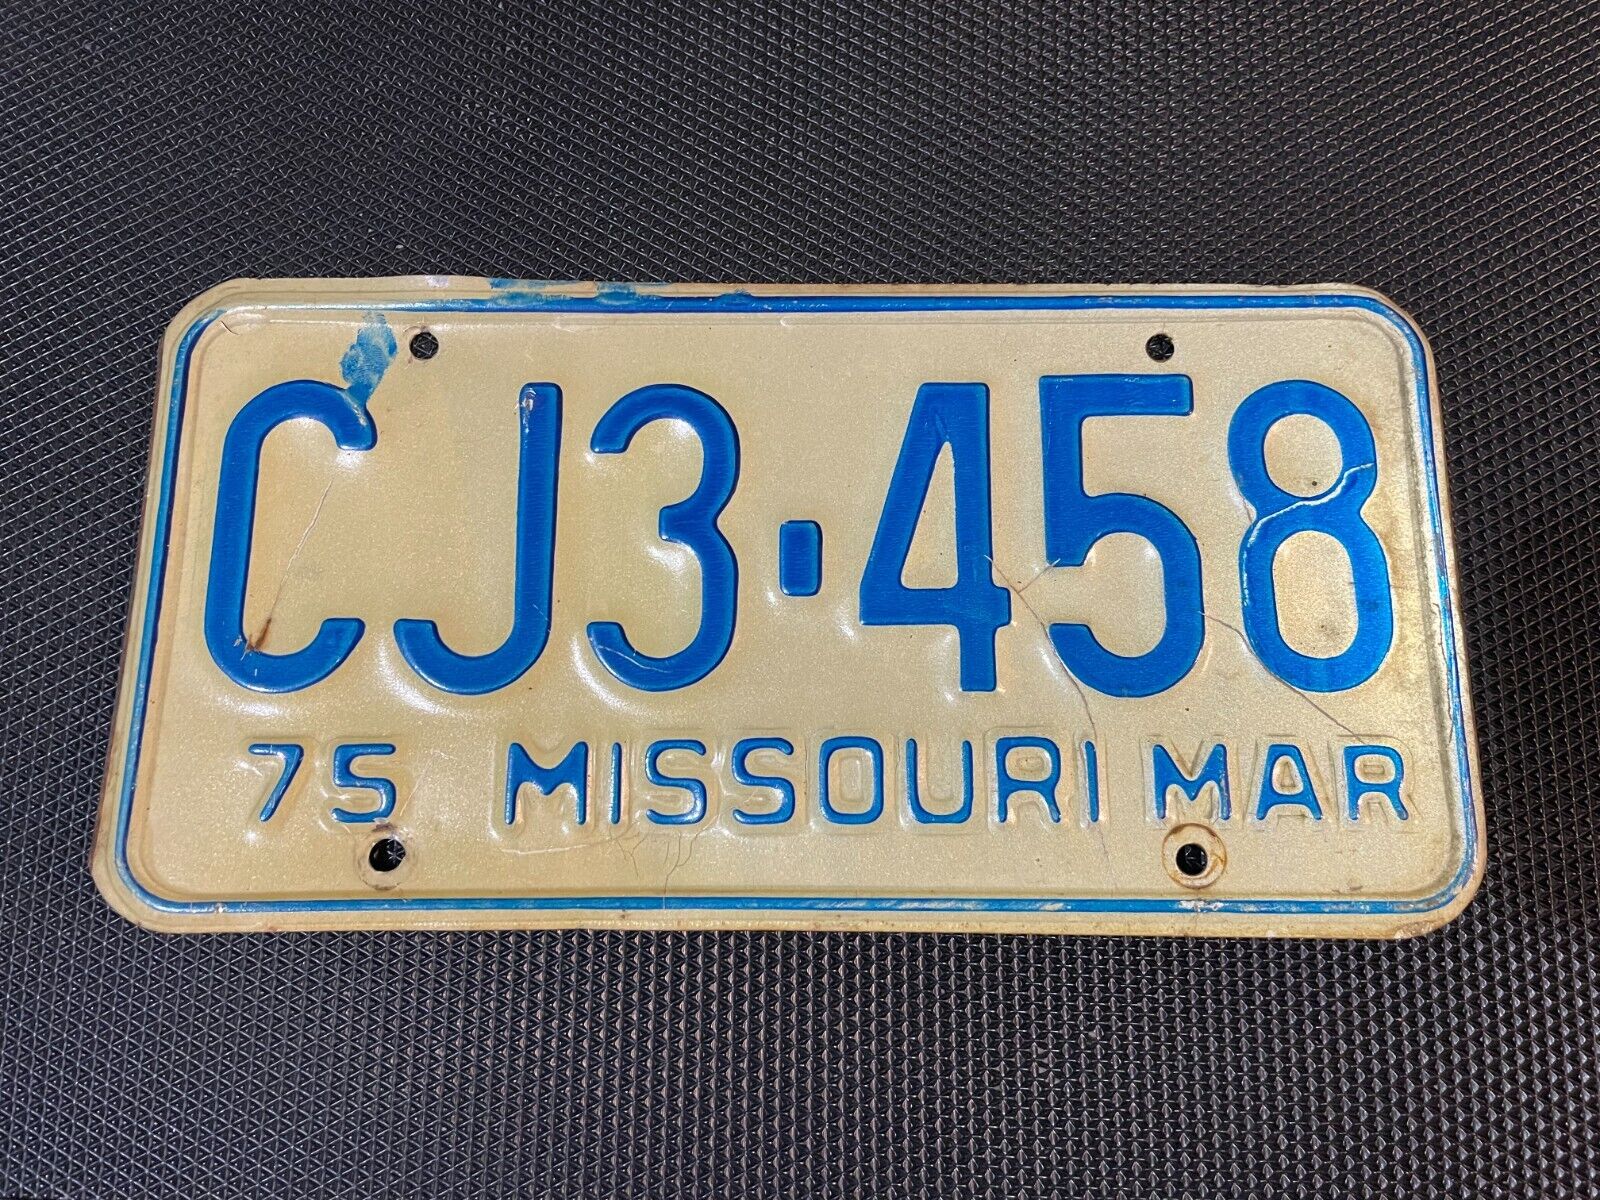 MISSOURI LICENSE PLATE 1975 MARCH CJ3 458